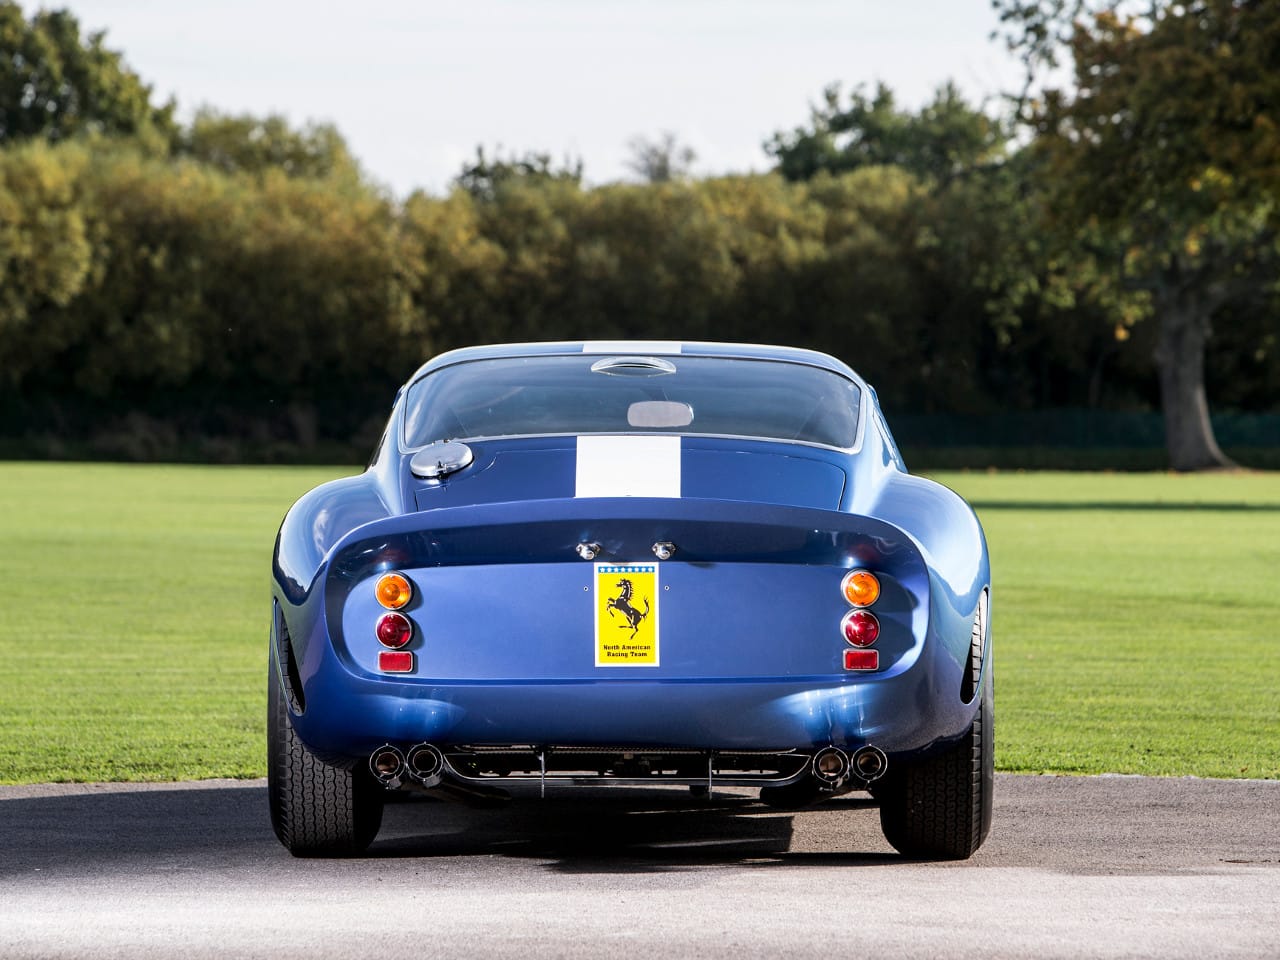 Der Bolide mit der Chassis-Nummer 3387 ist der zweite gebaute Ferrari dieser legendären Baureihe, wie der Anbieter schreibt.